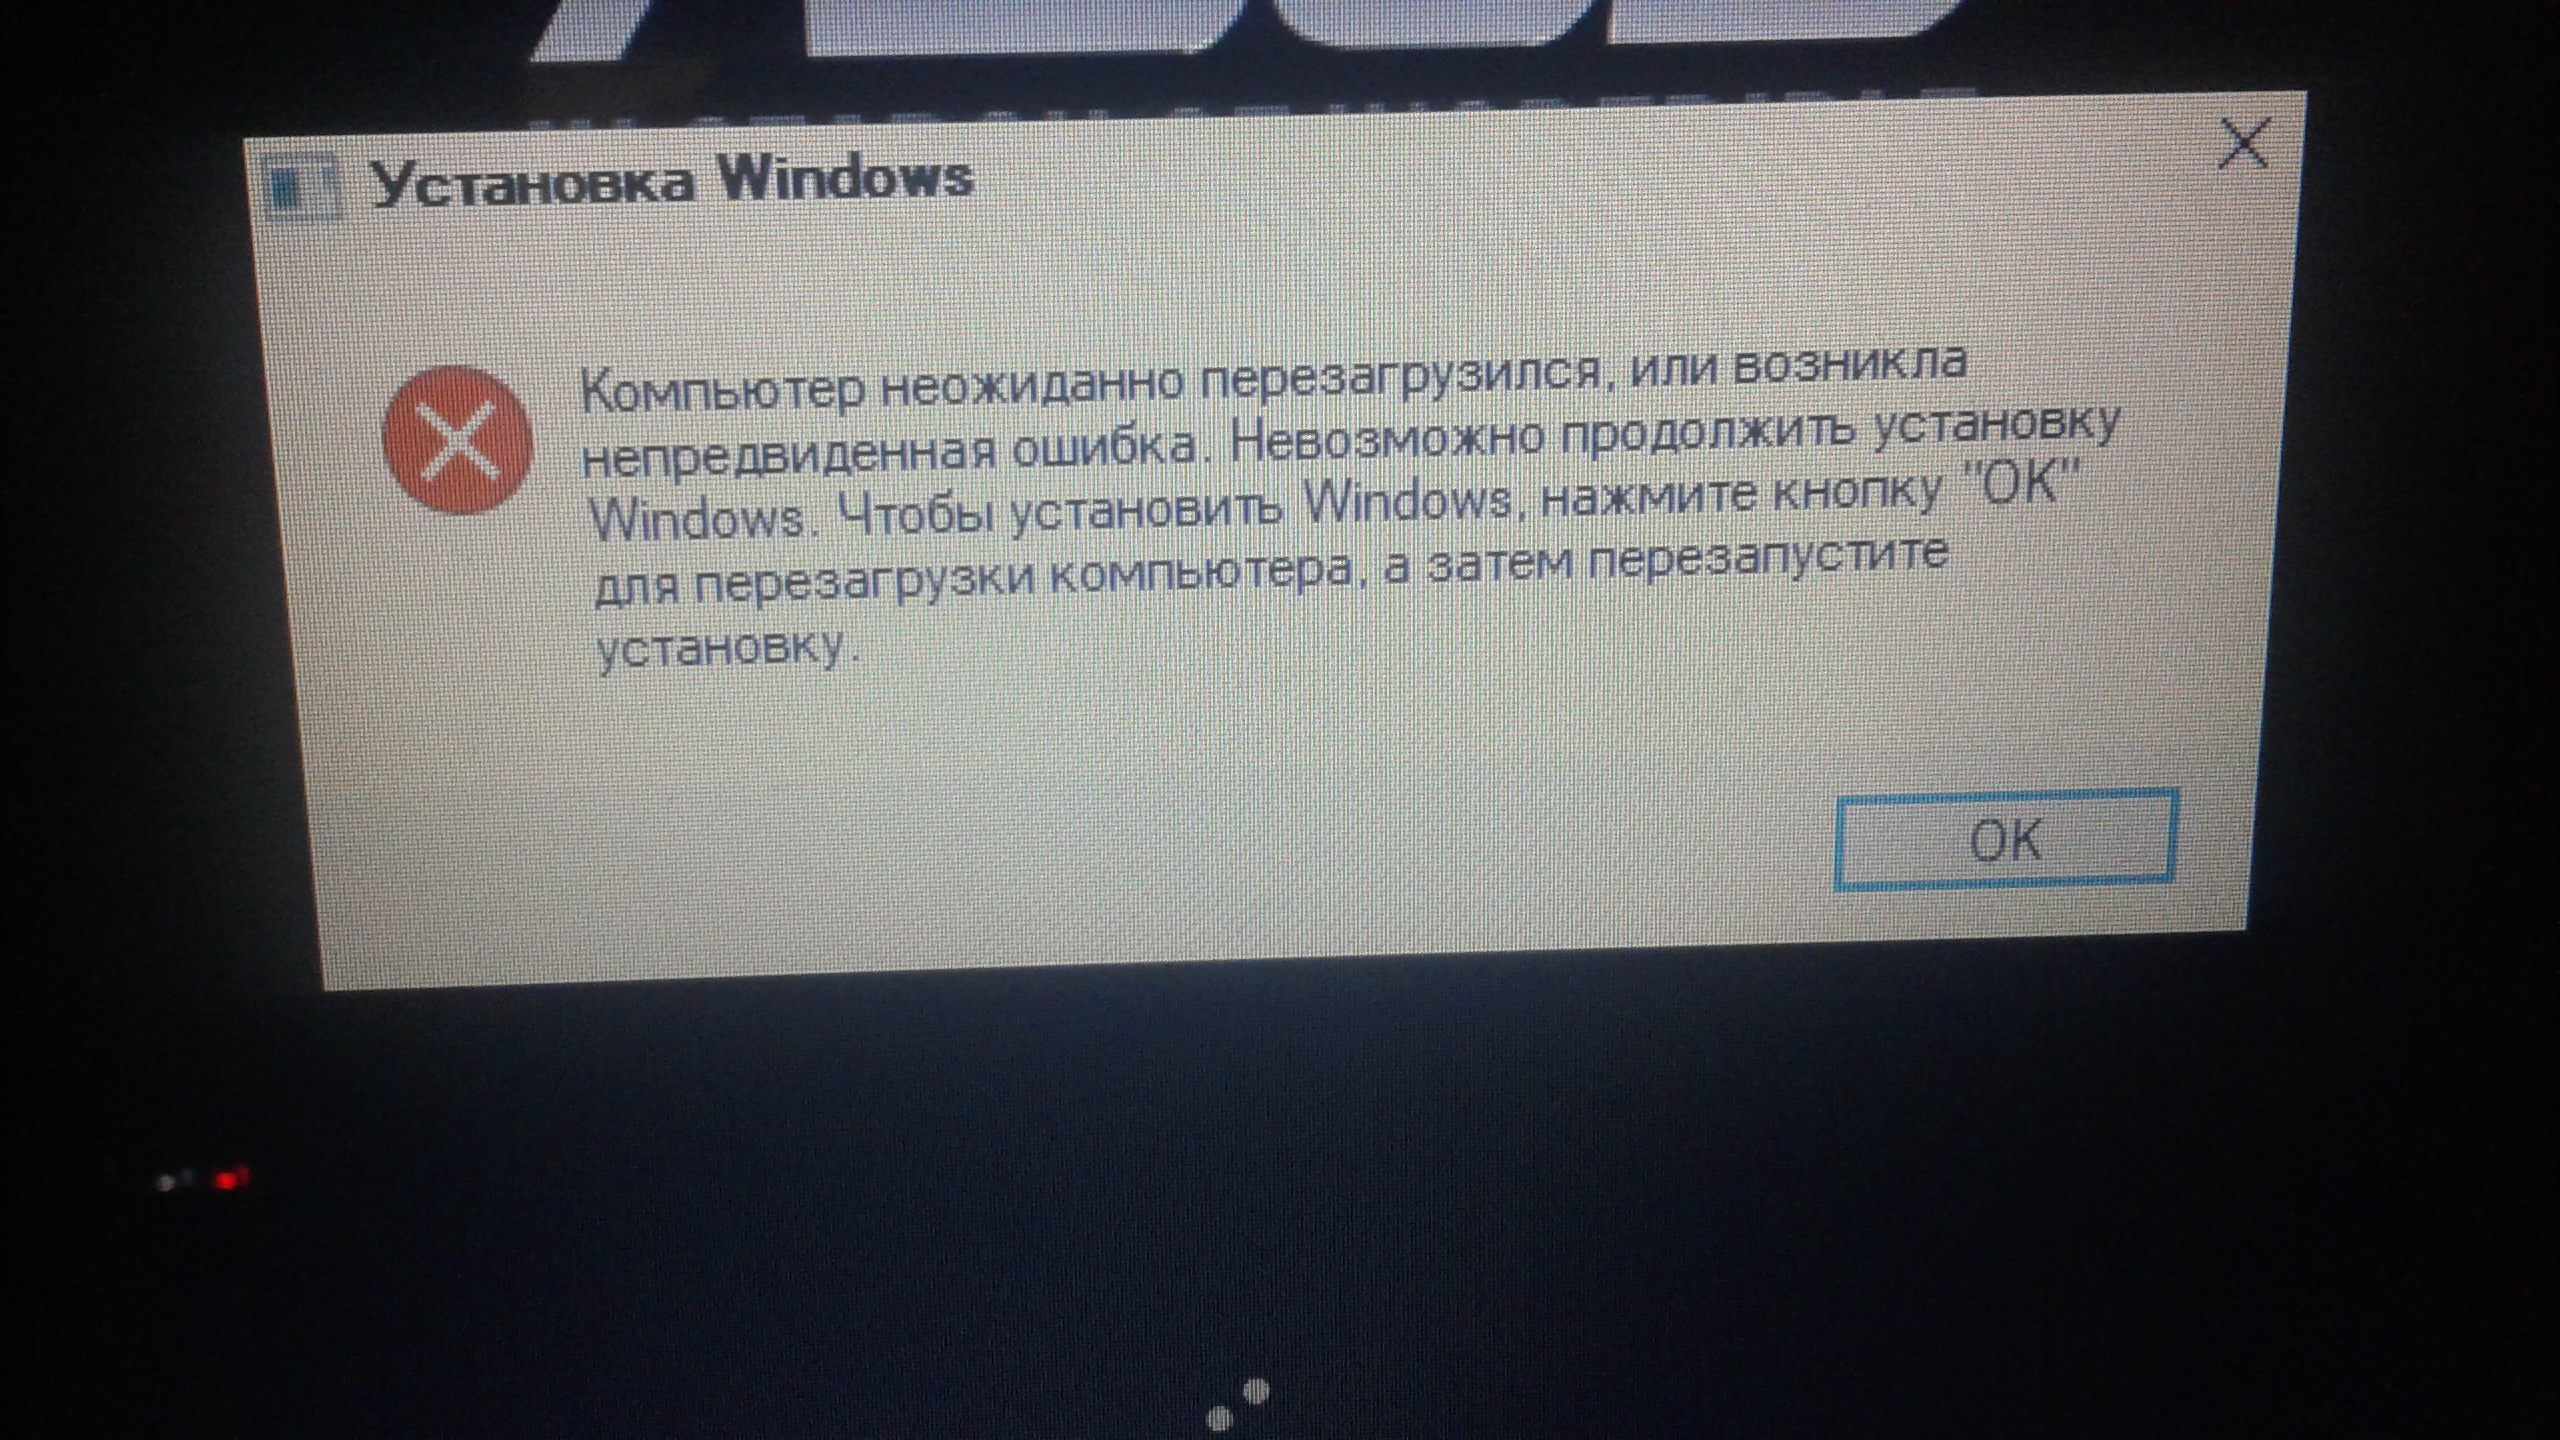 Базовое соединение закрыто непредвиденная ошибка. Возникла непредвиденная ошибка Windows. Невозможно продолжить установку Windows. Windows 7 компьютер неожиданно перезагрузился.